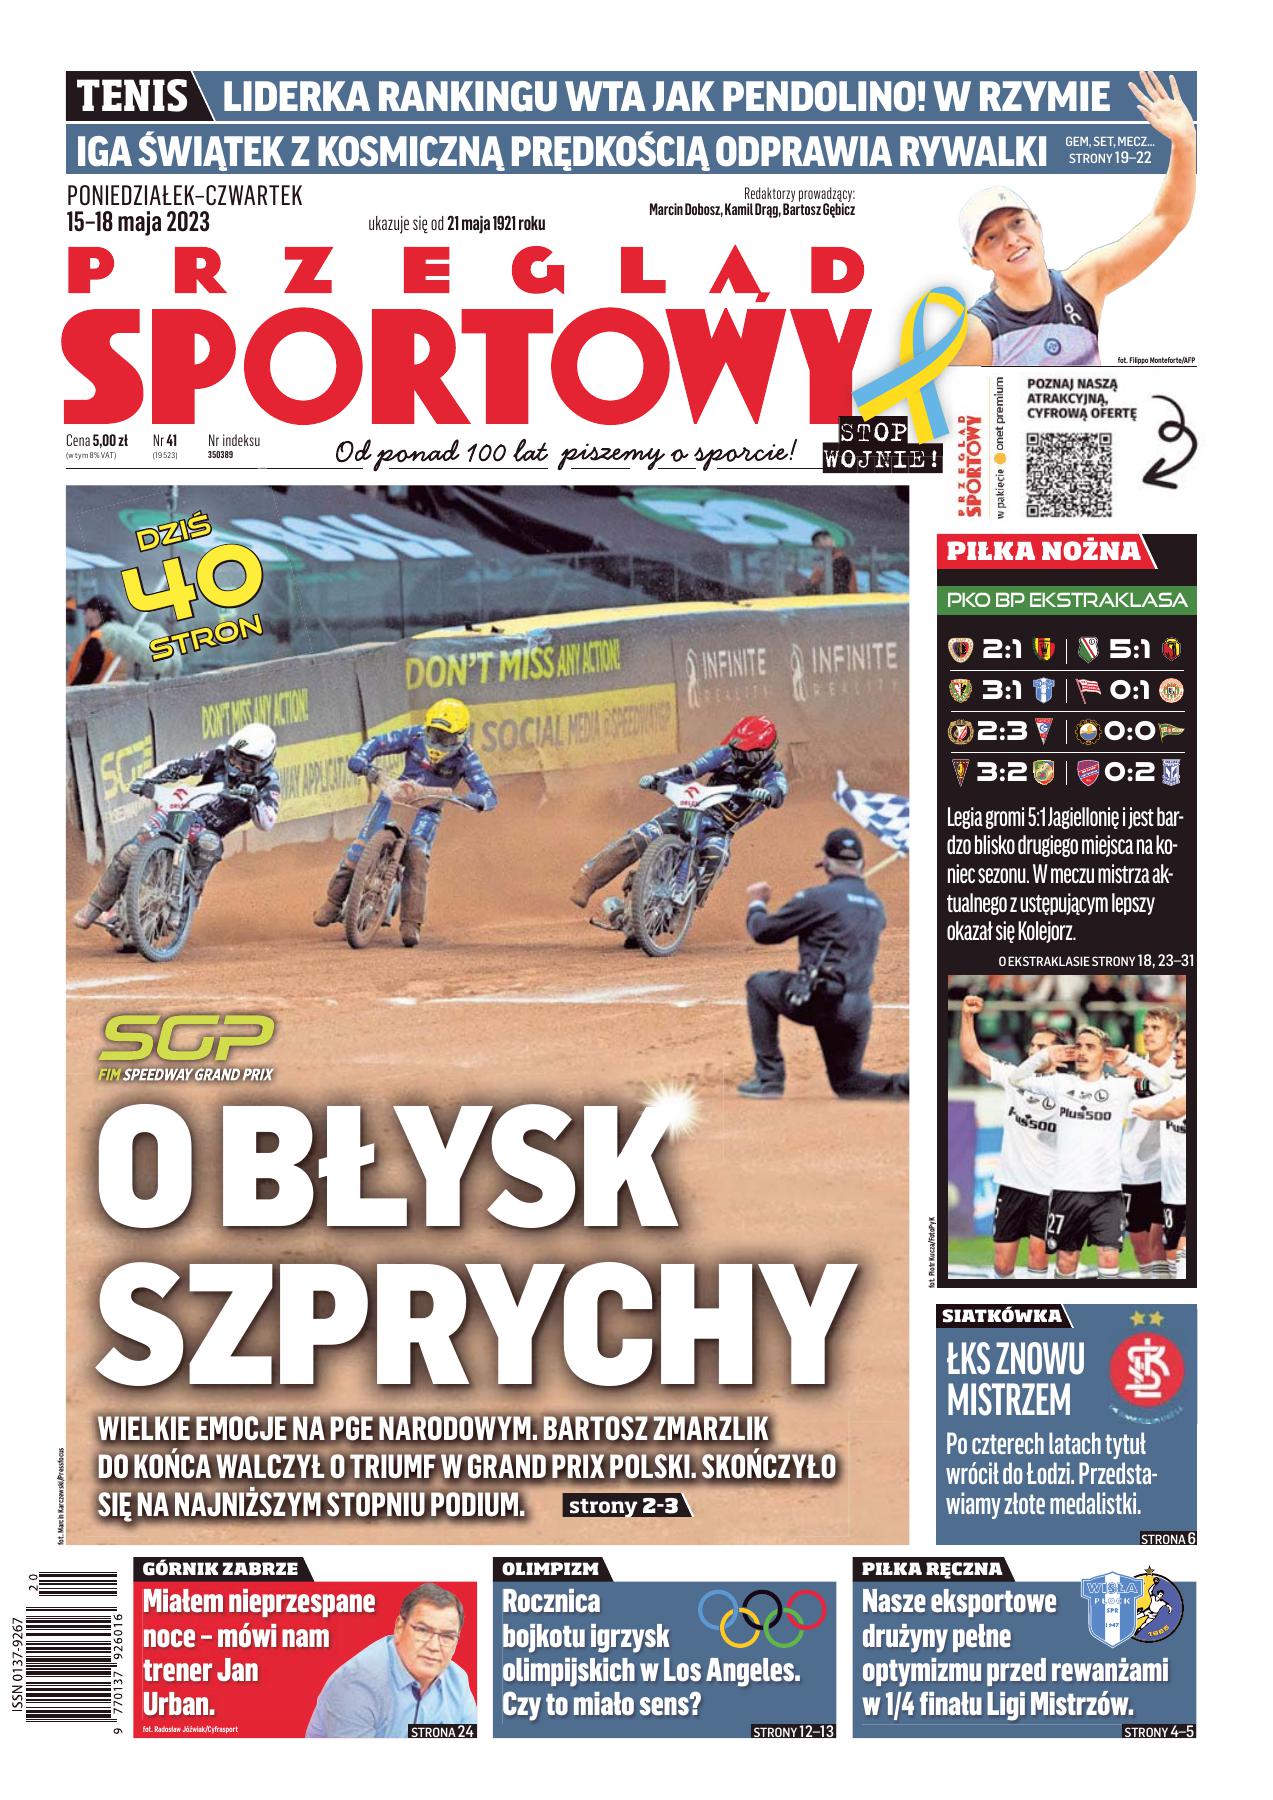 Raków Częstochowa - Lech Poznań 0:2 (14.05.2023) Przegląd Sportowy